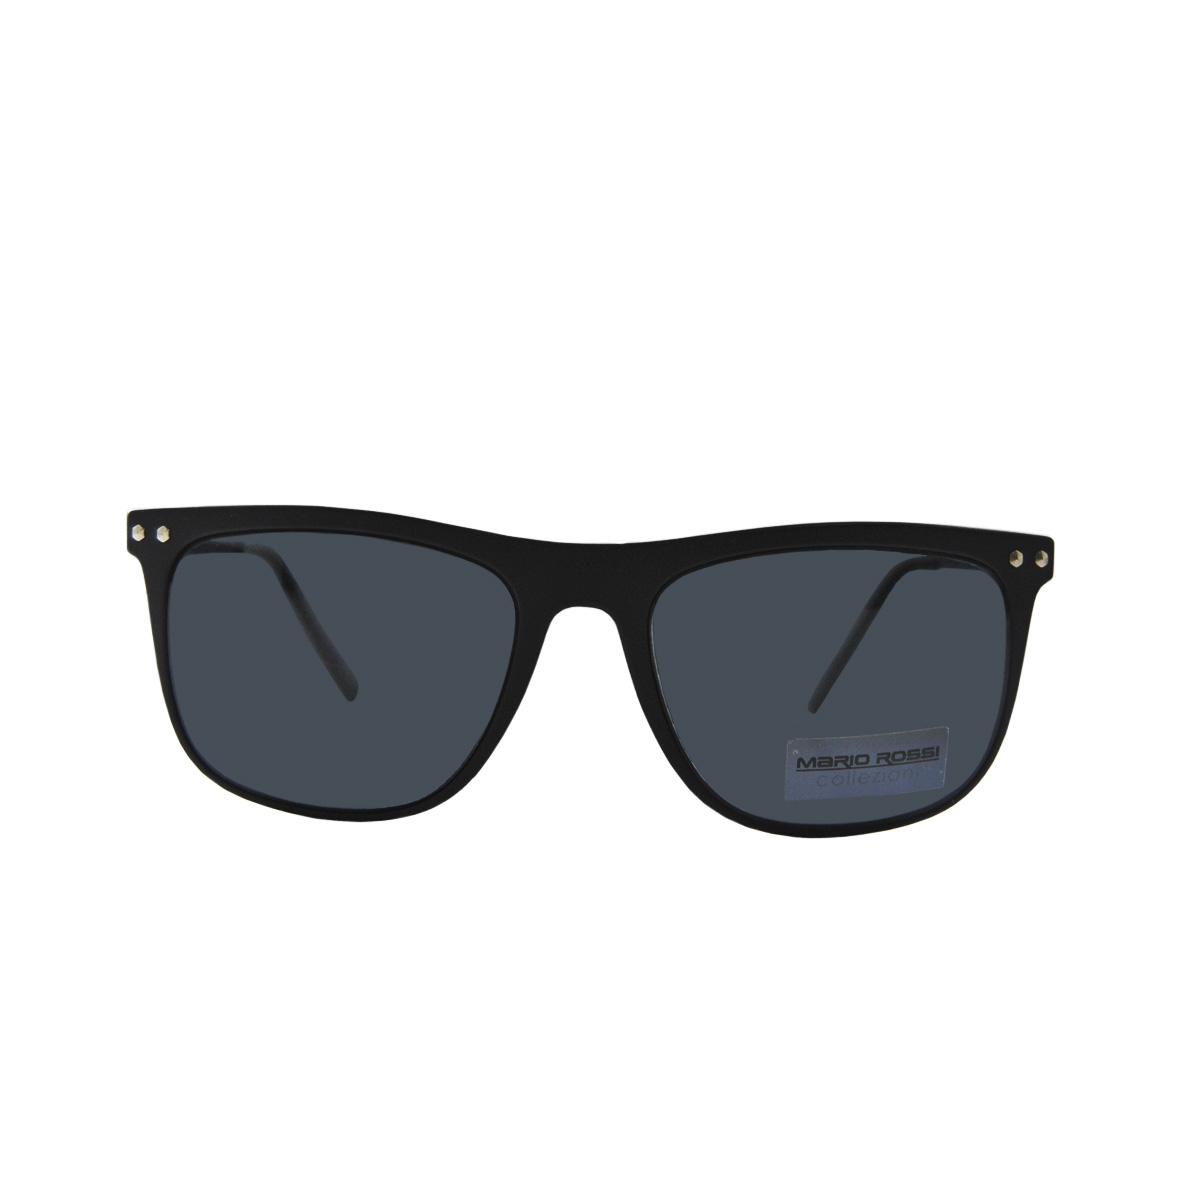 Солнцезащитные очки Mario Rossi модель 05 046 18                            